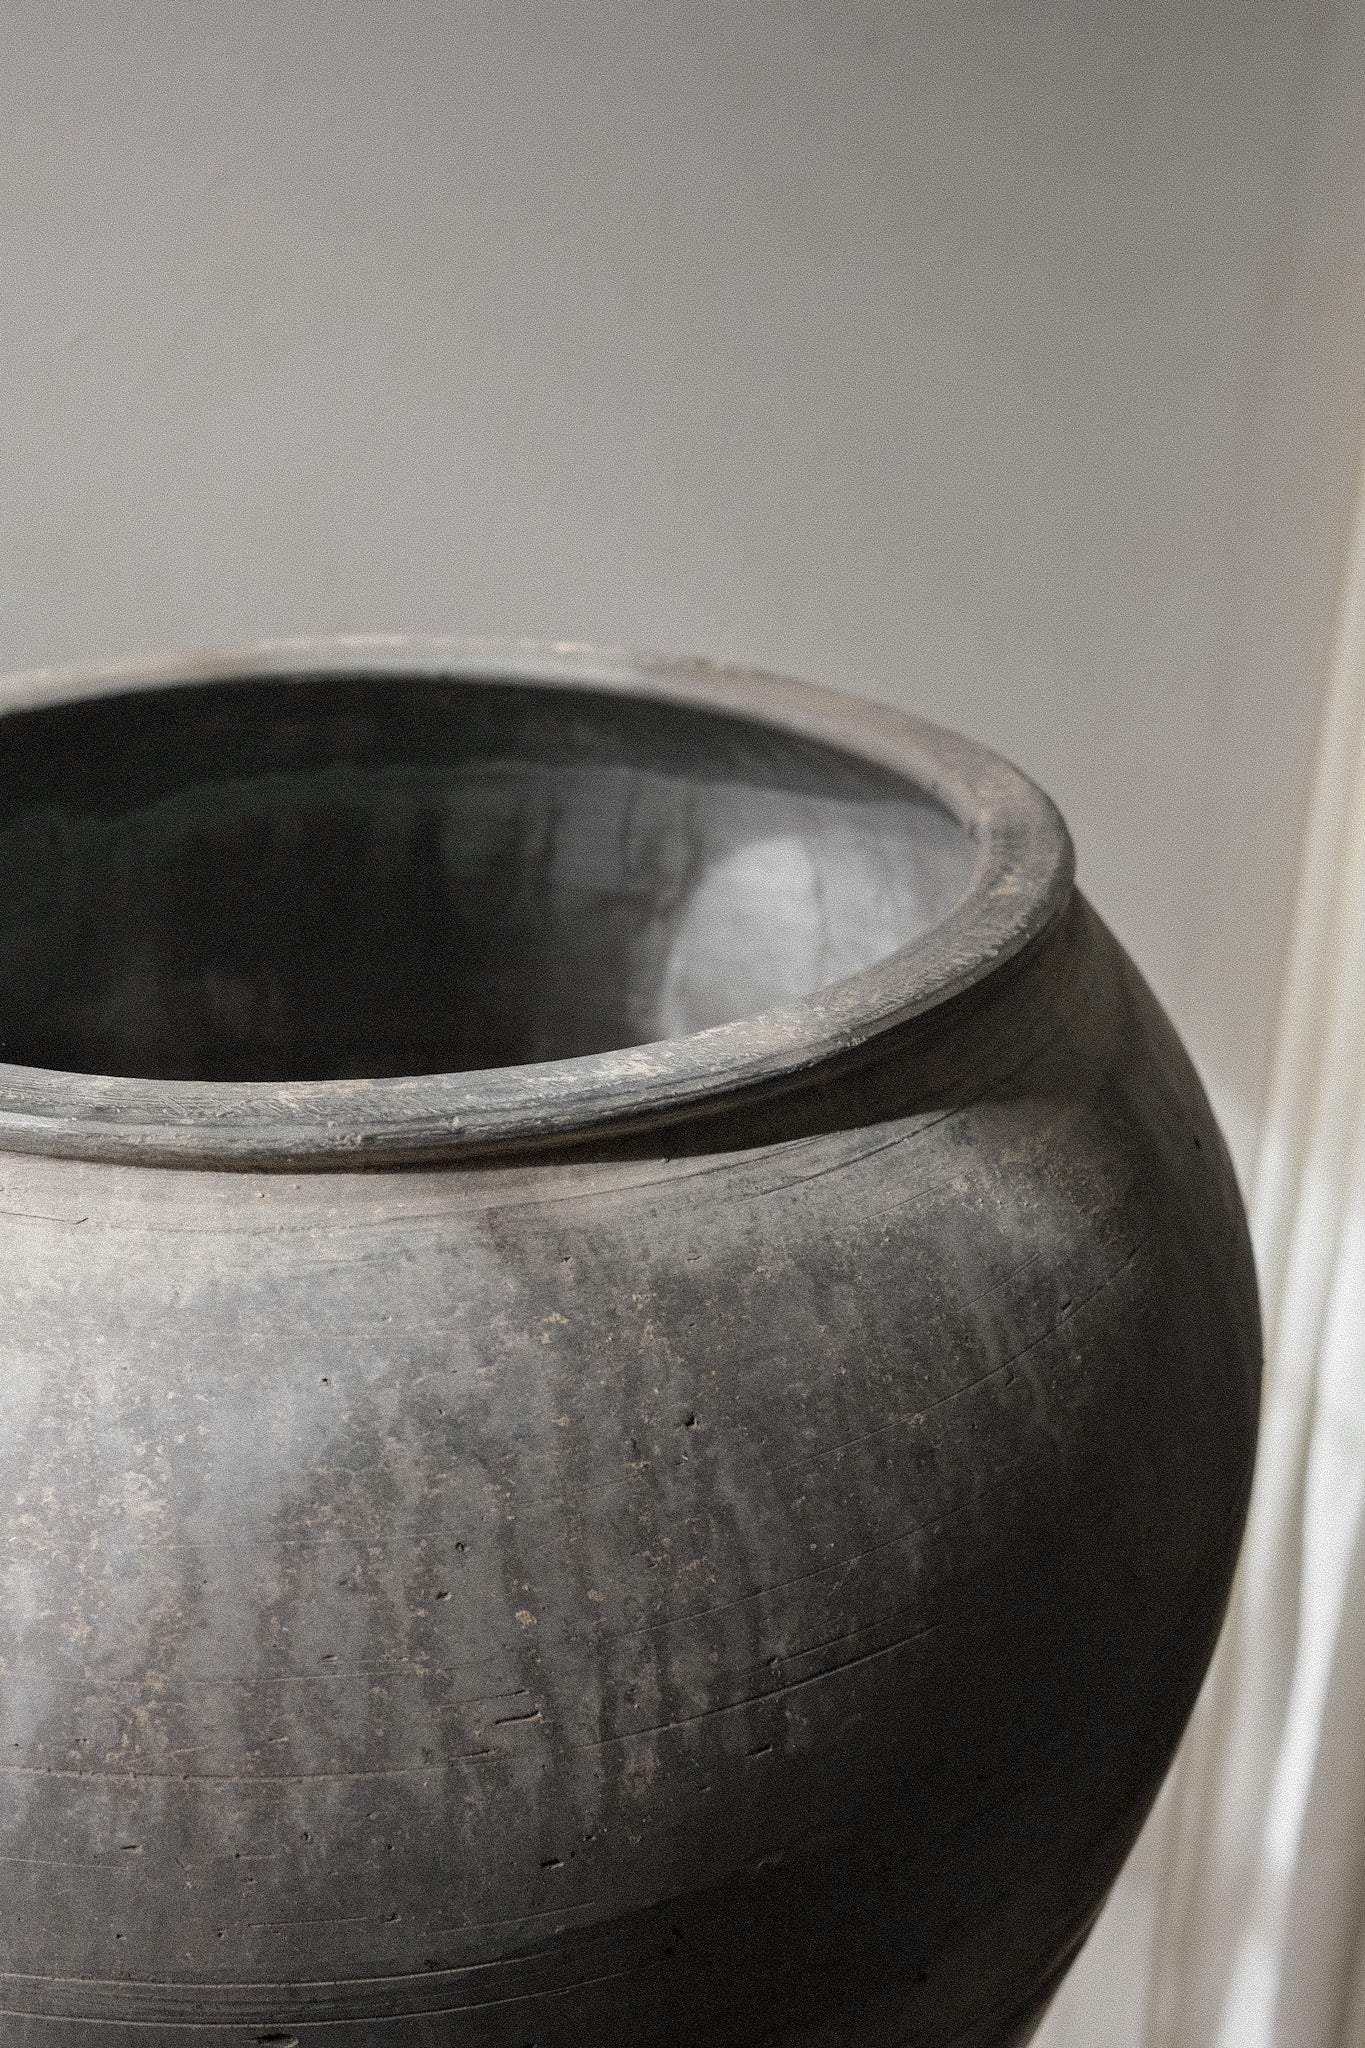 Large Cunmin Pot